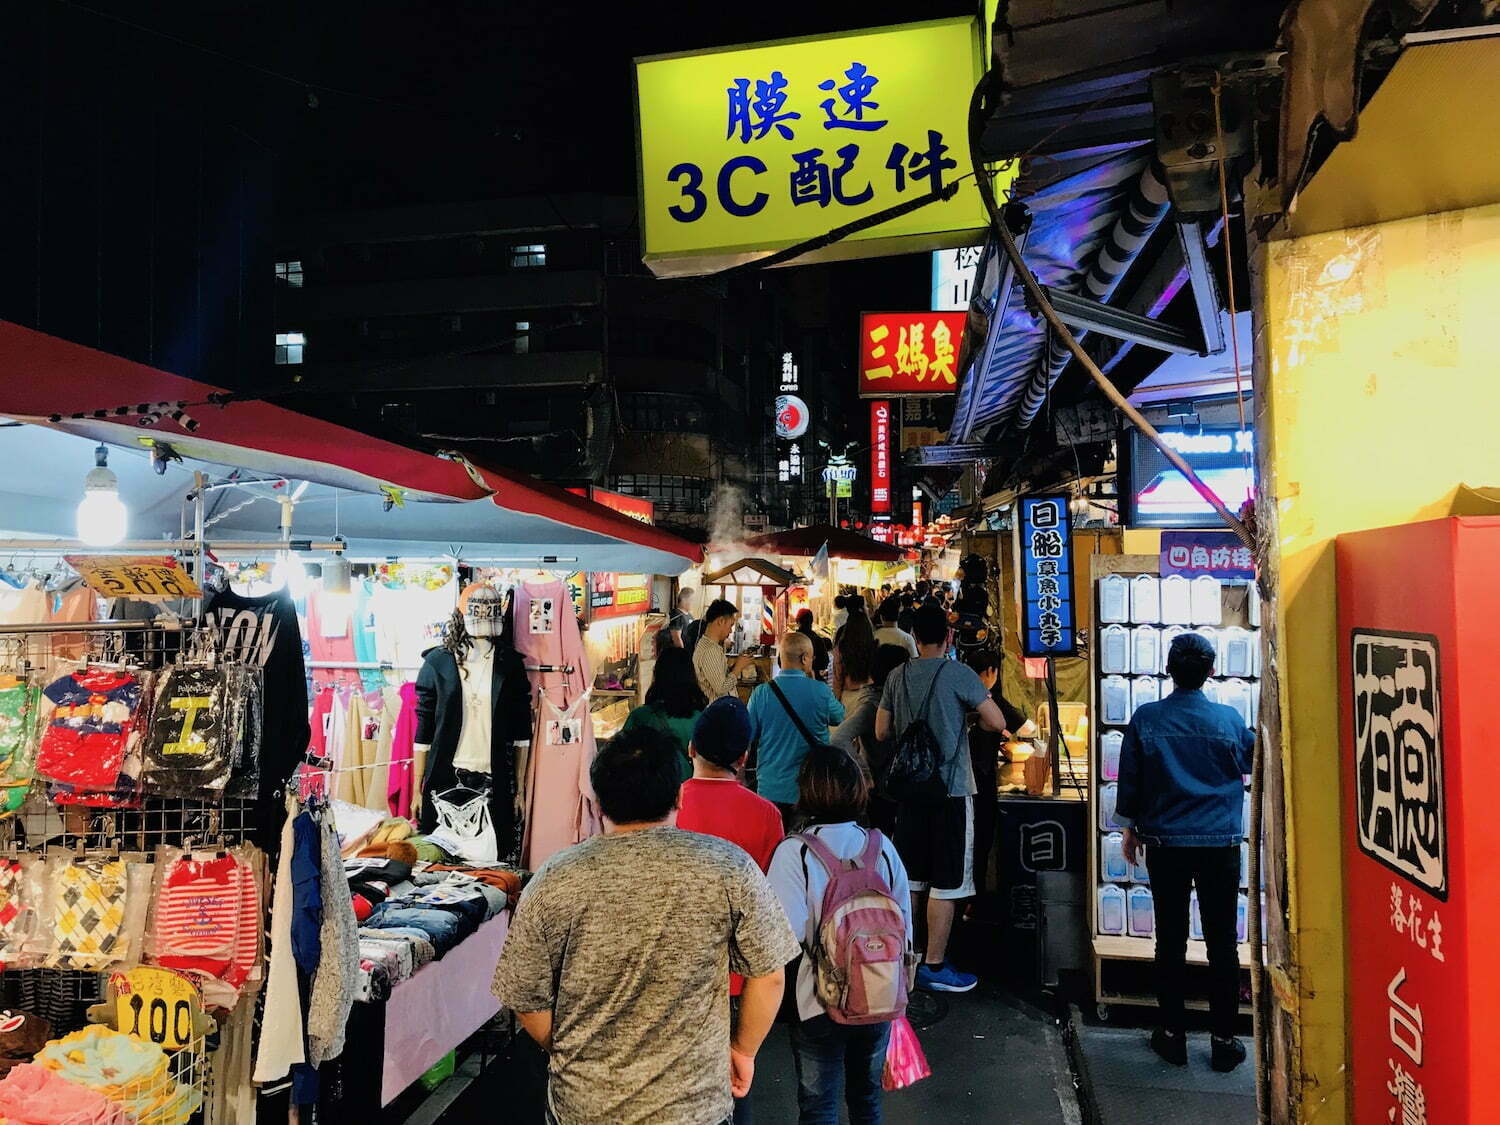 Night Market near Shouzan station in Taipei